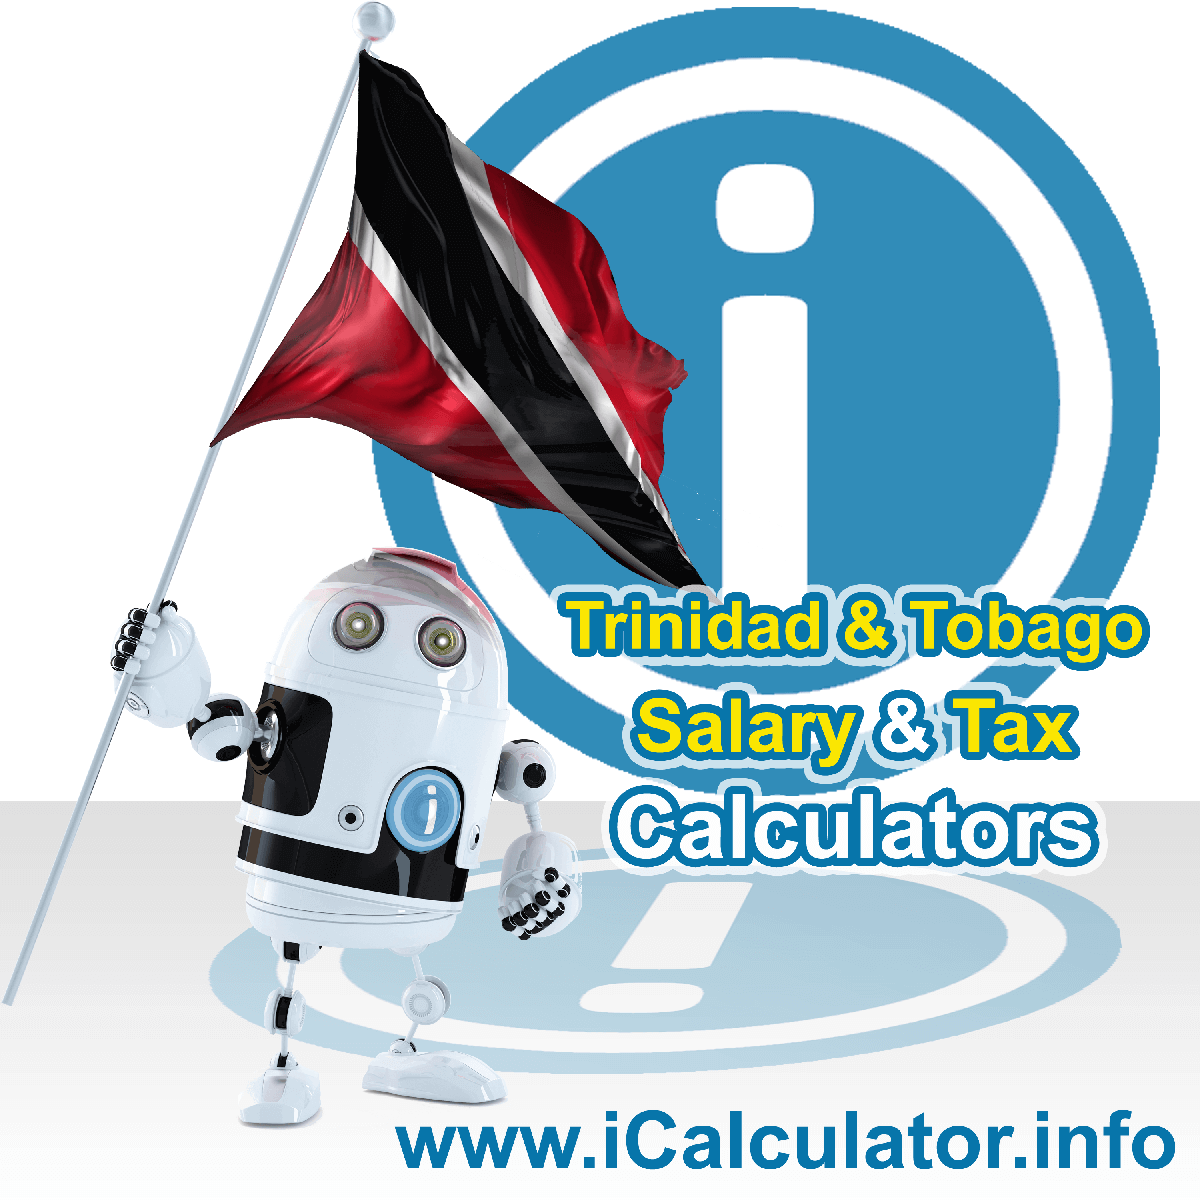 Trinidad And Tobago Tax Calculator. This image shows the Trinidad And Tobago flag and information relating to the tax formula for the Trinidad And Tobago Salary Calculator